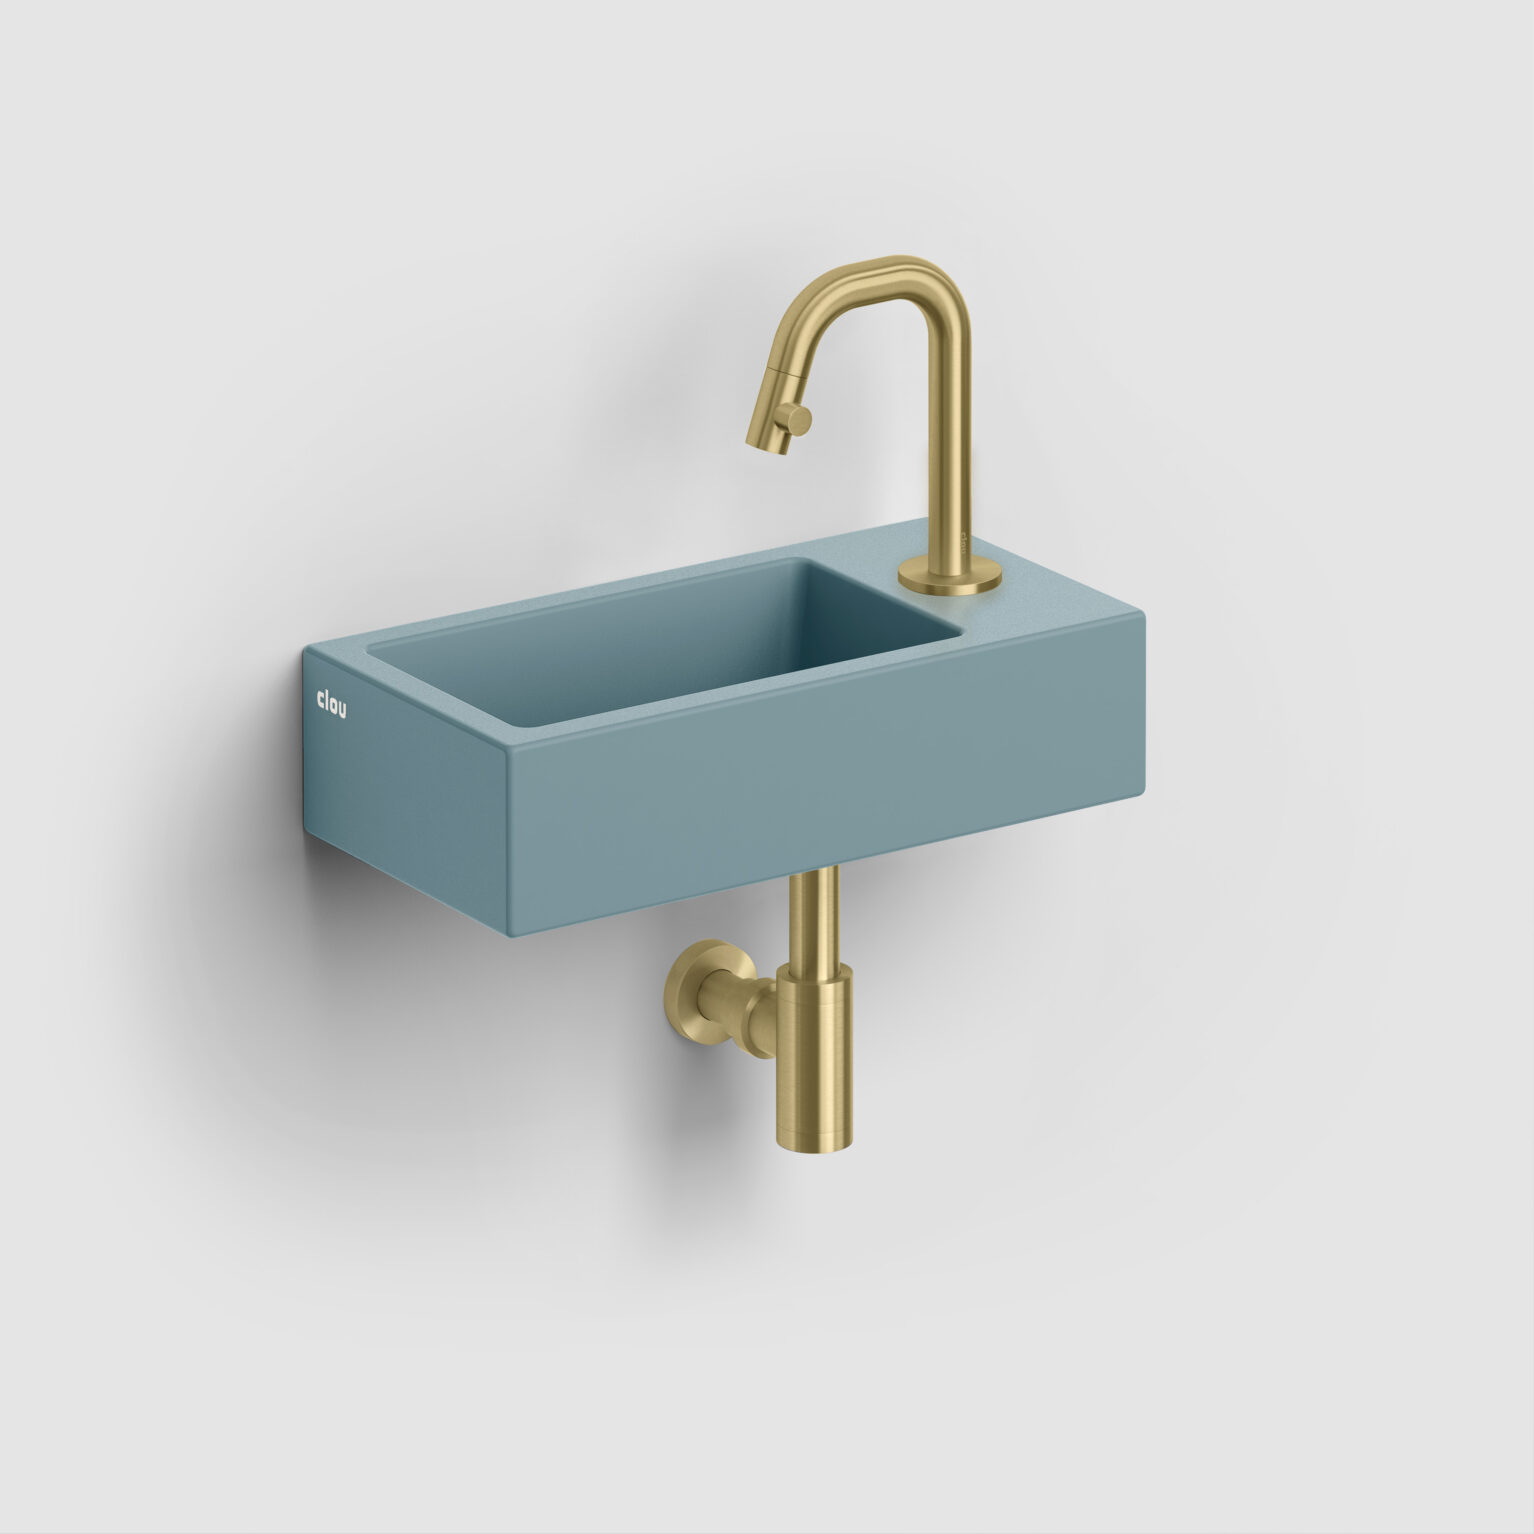 fontein-toilet-badkamer-luxe-sanitair-InBe-rechts-clou-36cm-Flush3-mat-blauw-CL0338030-Kaldur-koudwater-kraan-goud-geborsteld-PVD-CL060500482R-MiniSuk-sifon-CL065301182